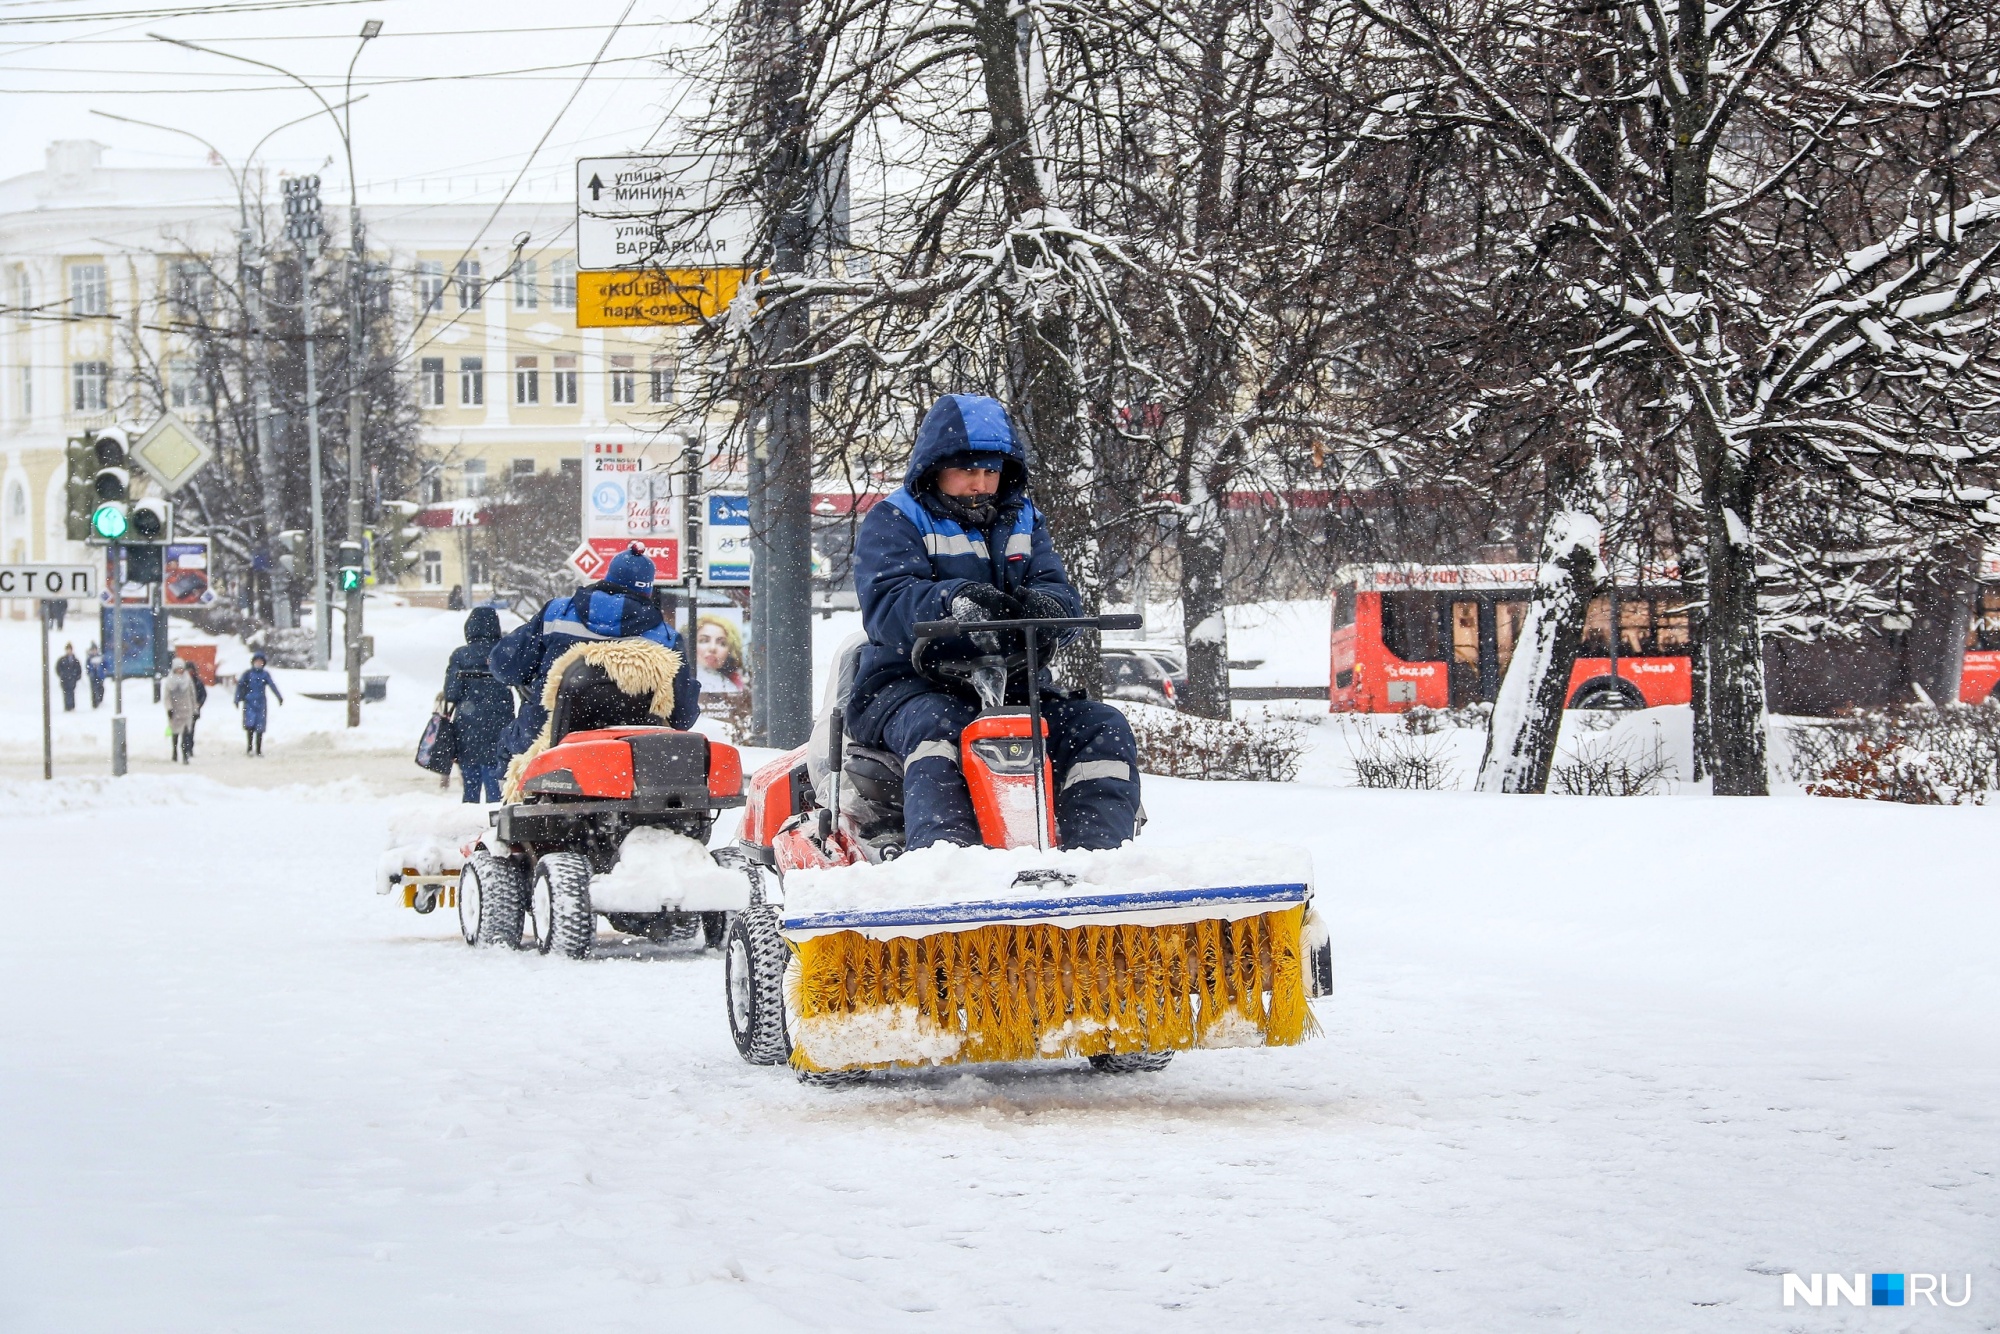 Такие снегоуборочные машины — единственный транспорт в городе, на чье движение не повлияли горы снега